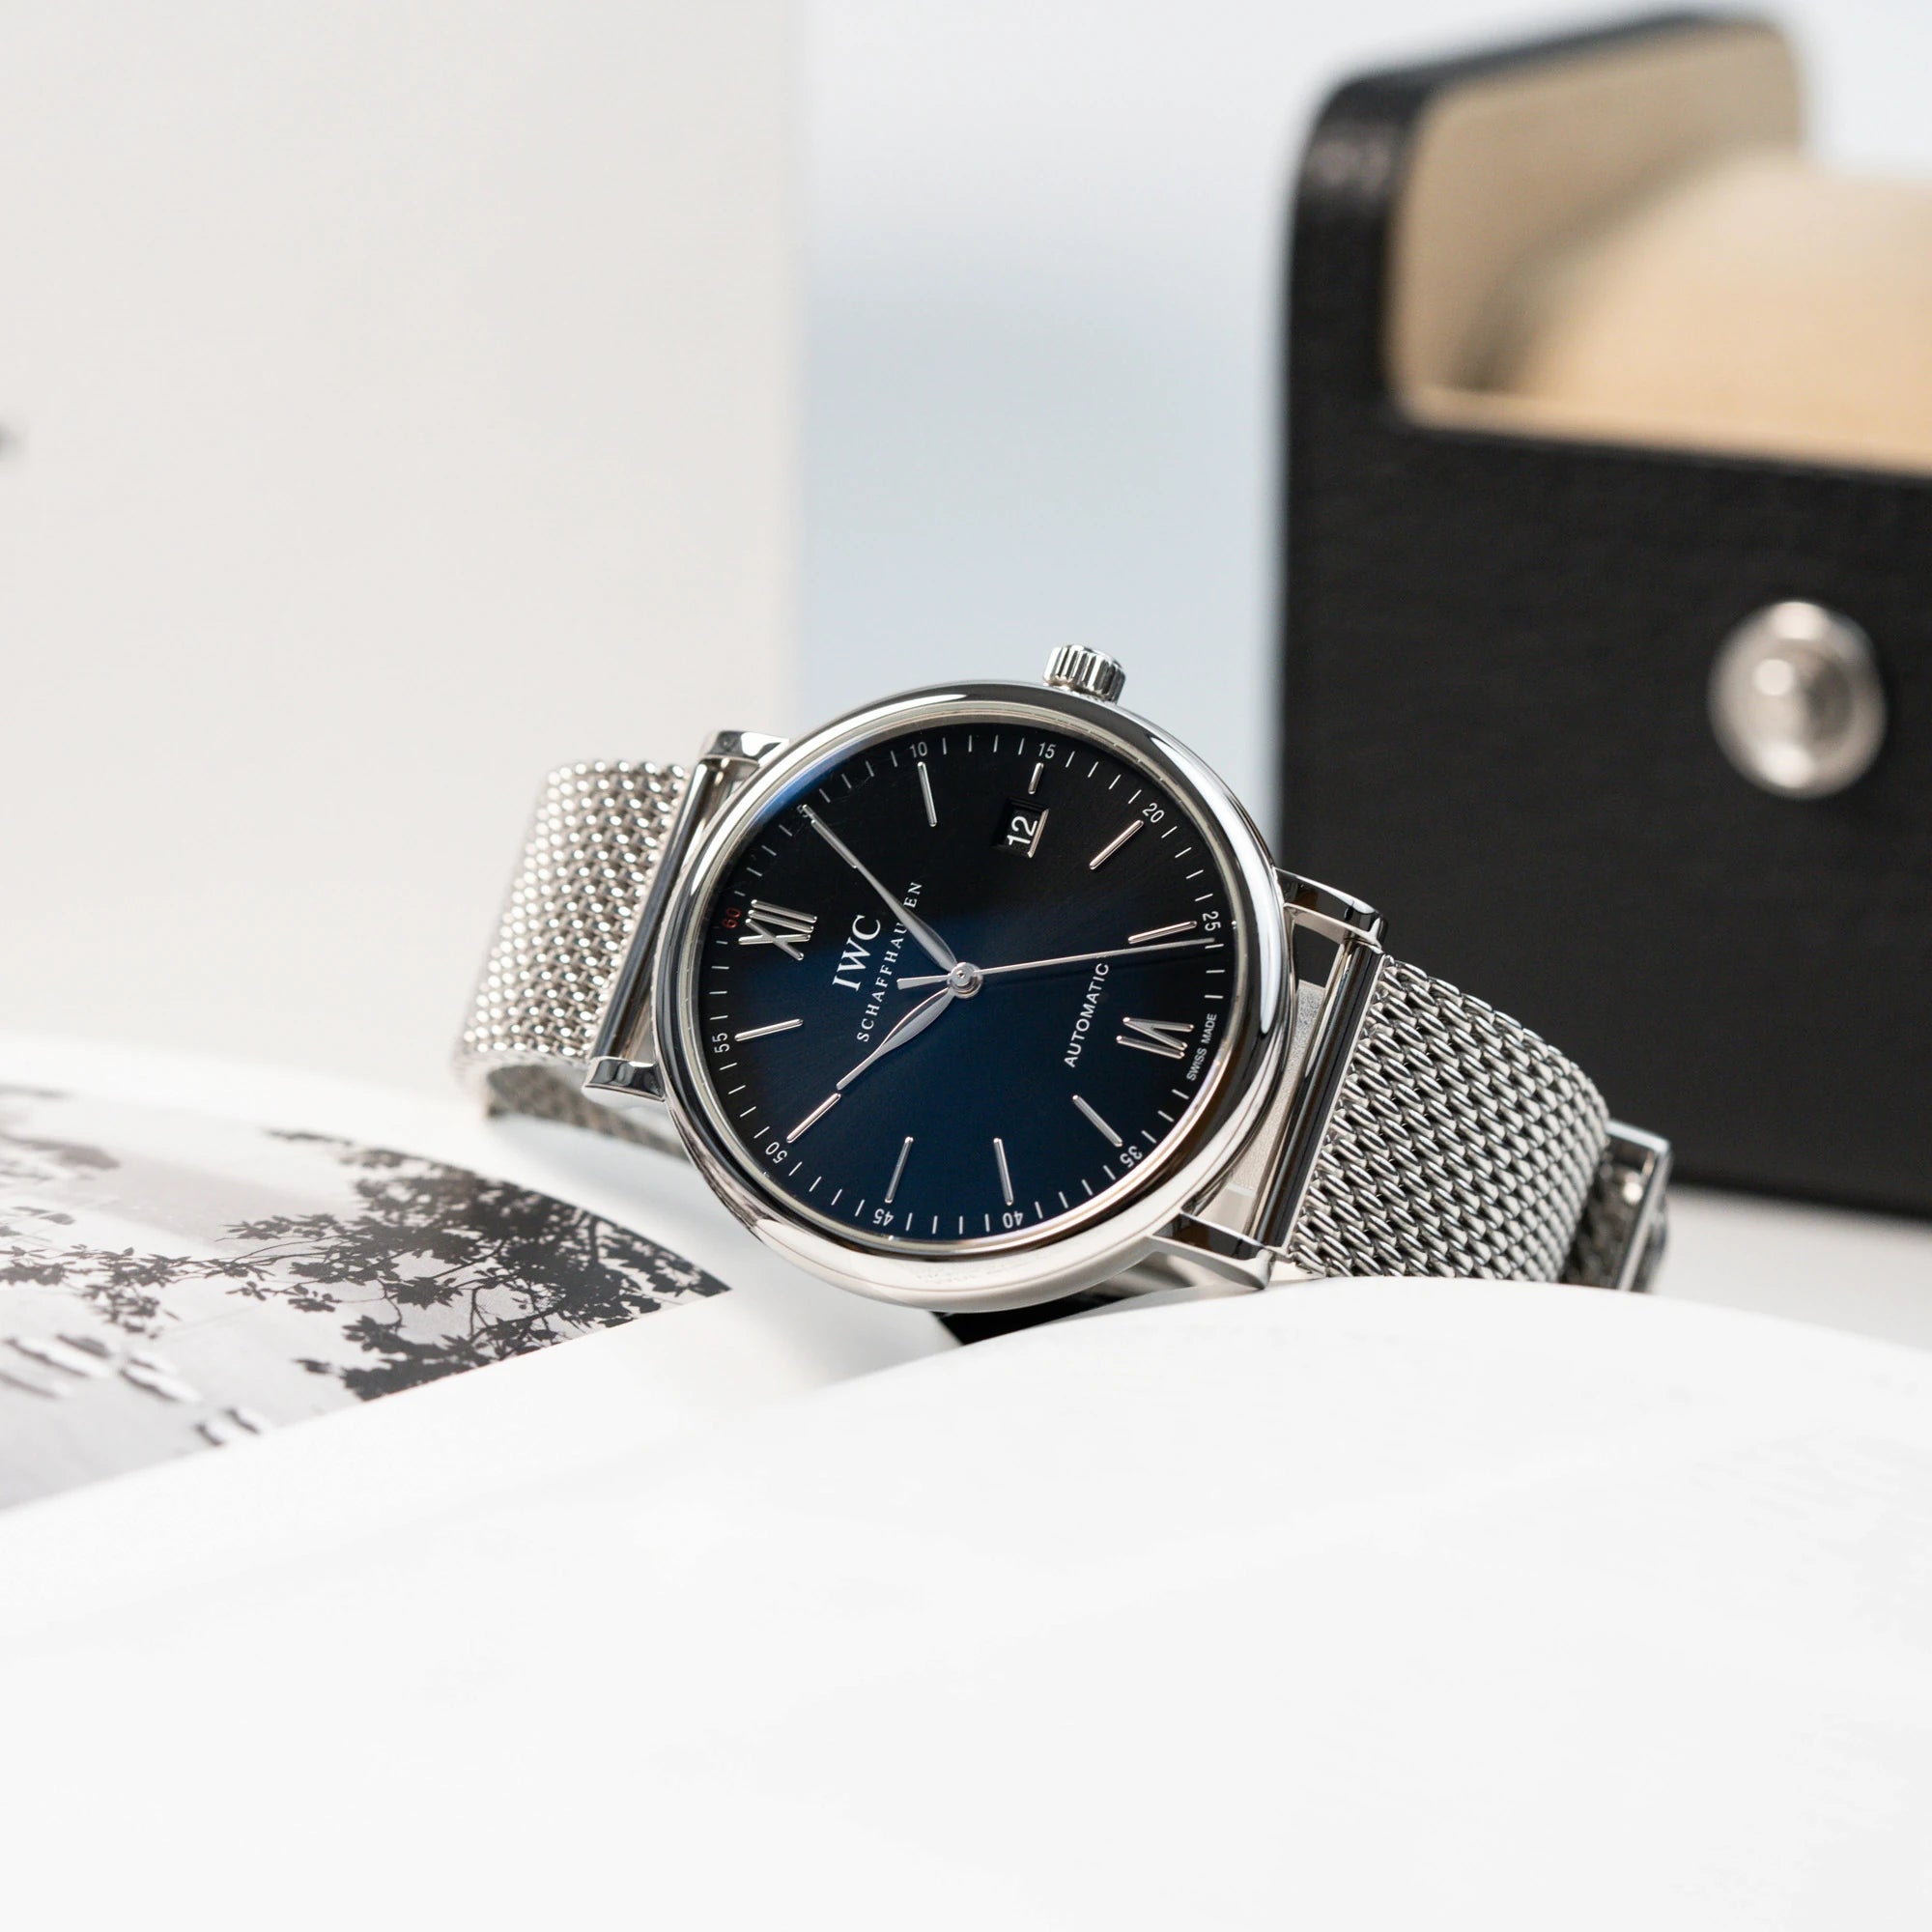 Produktfotografie der IWC Portofino 40 Automatik in Edelstahl mit schwarzem Zifferblatt, während die Uhr an einem aufgeschlagenen Buch lehnt